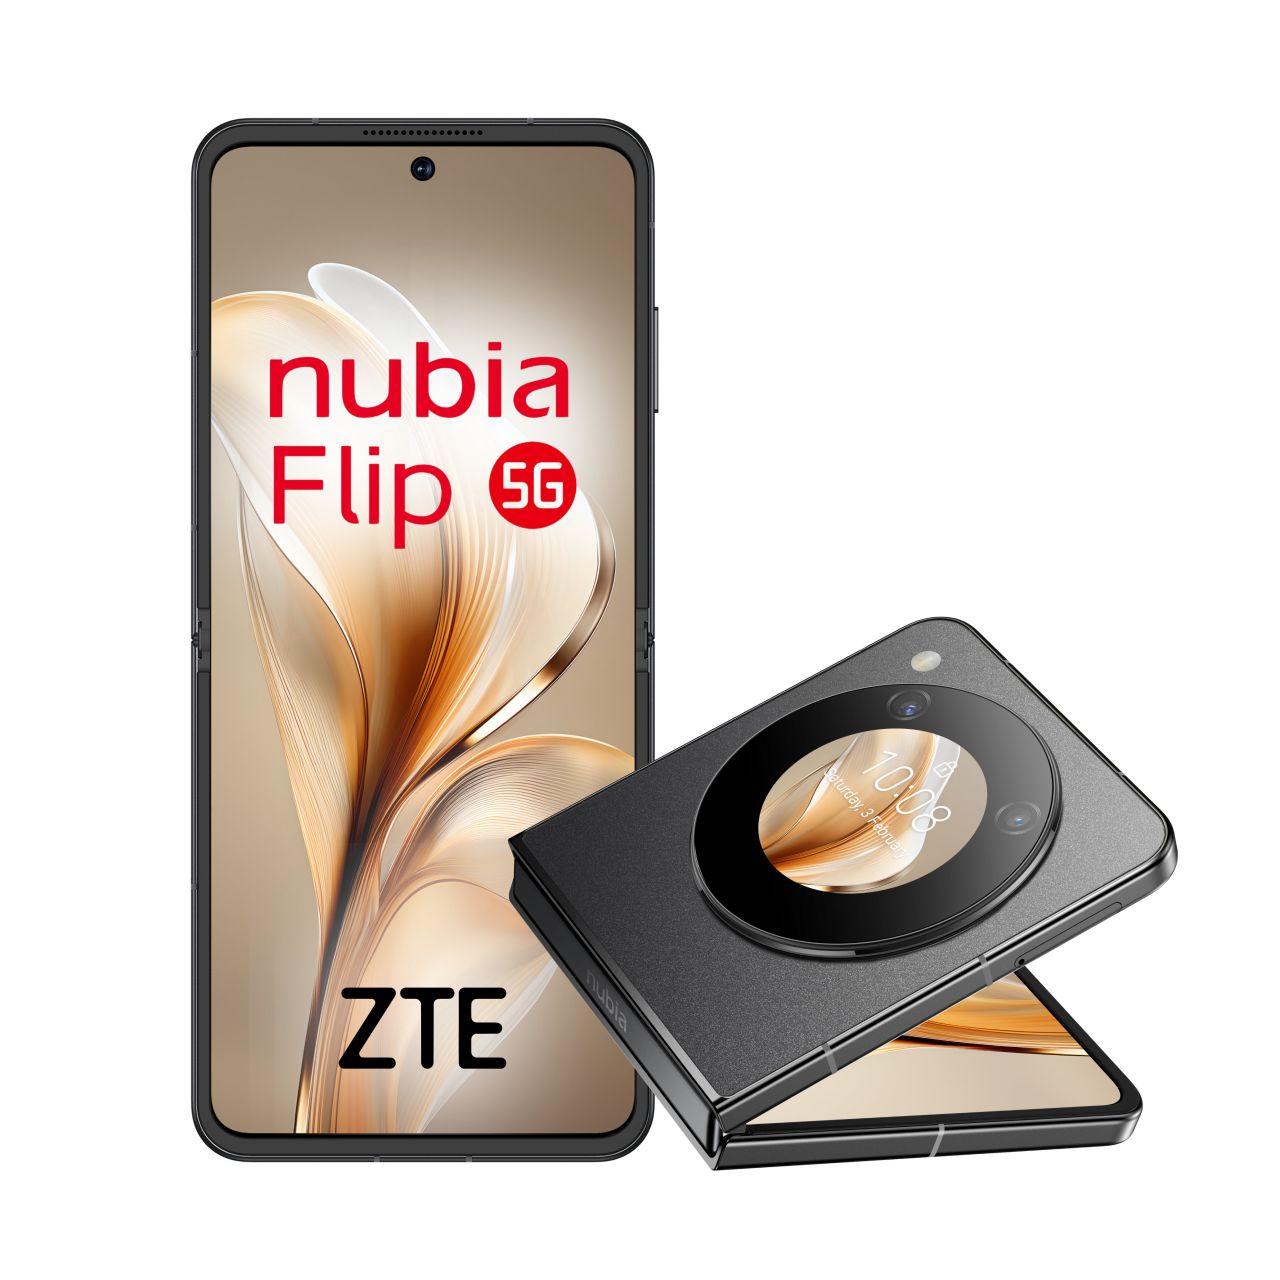 ZTE Nubia Flip 5G